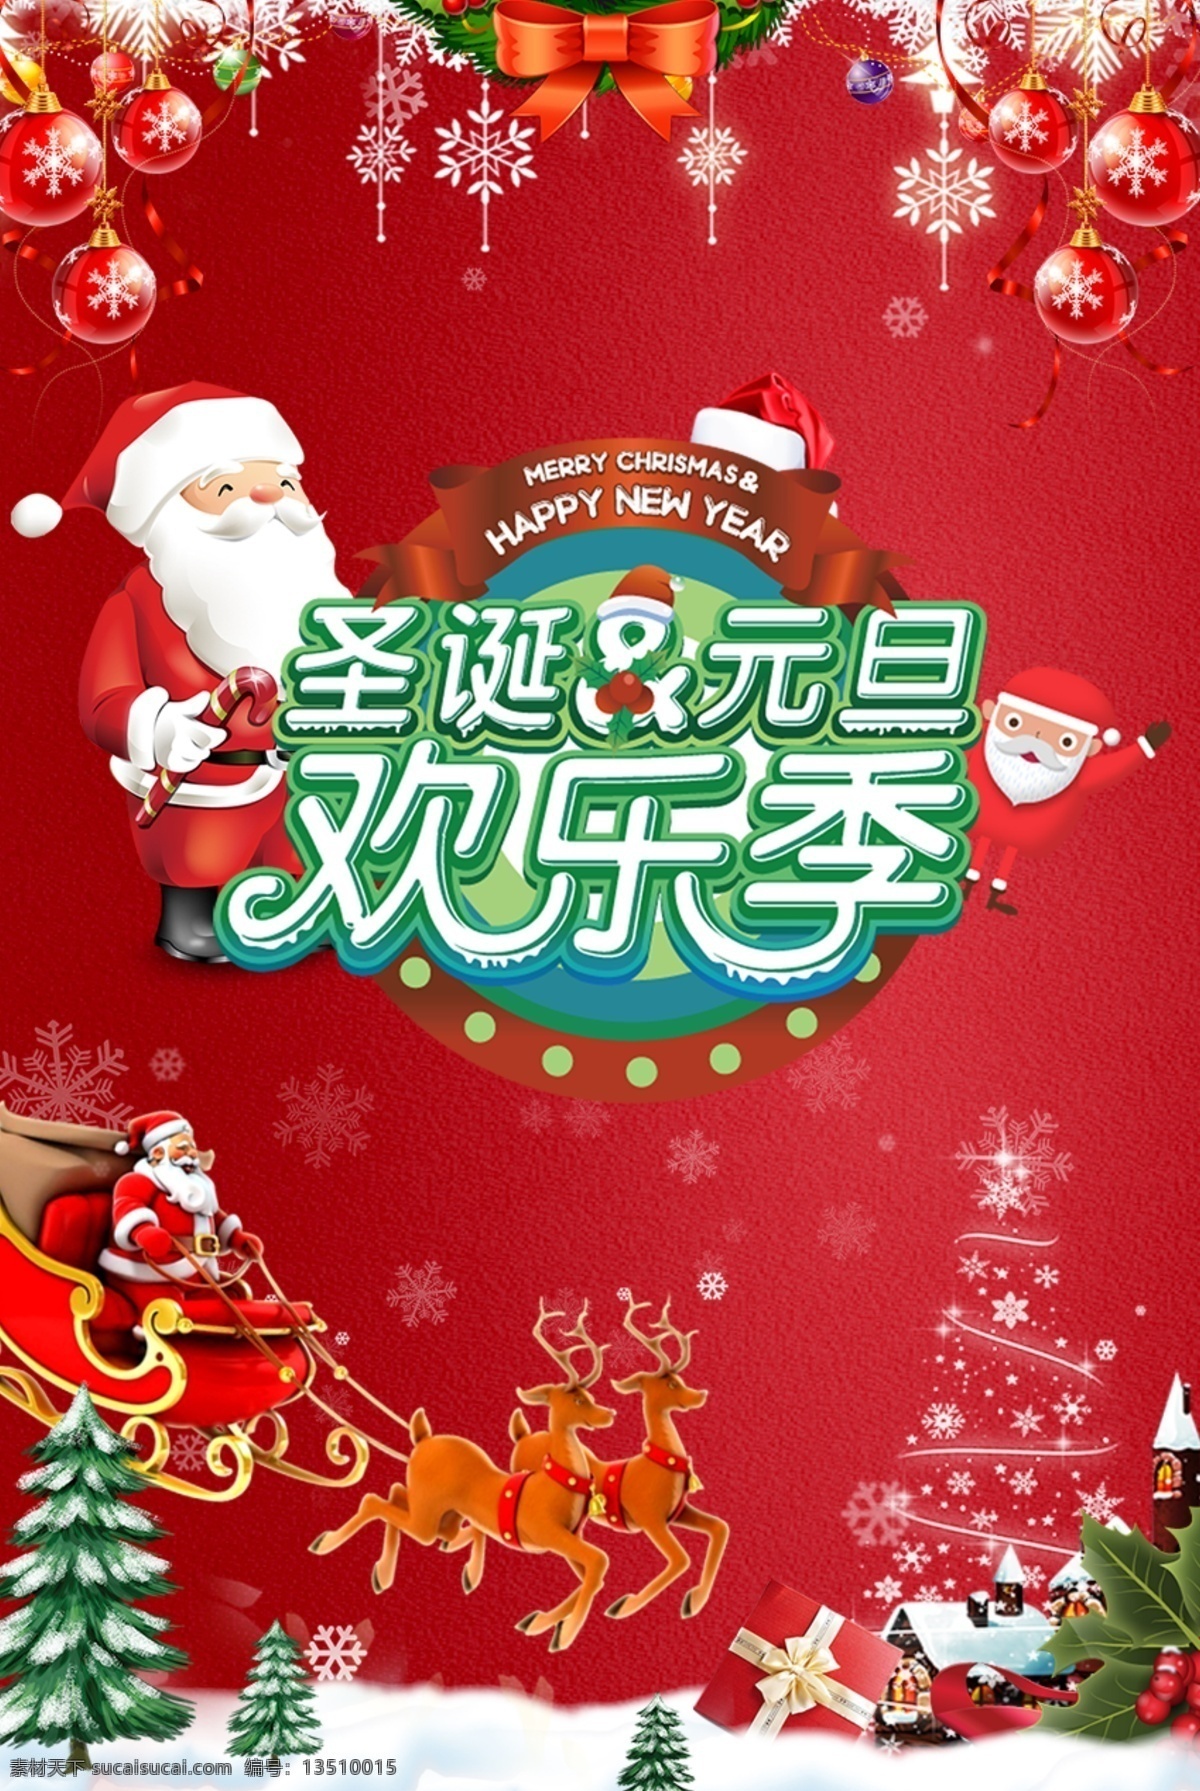 圣诞 元旦 双 节 狂欢 海报 大气 红色 圣诞节快乐 宣传